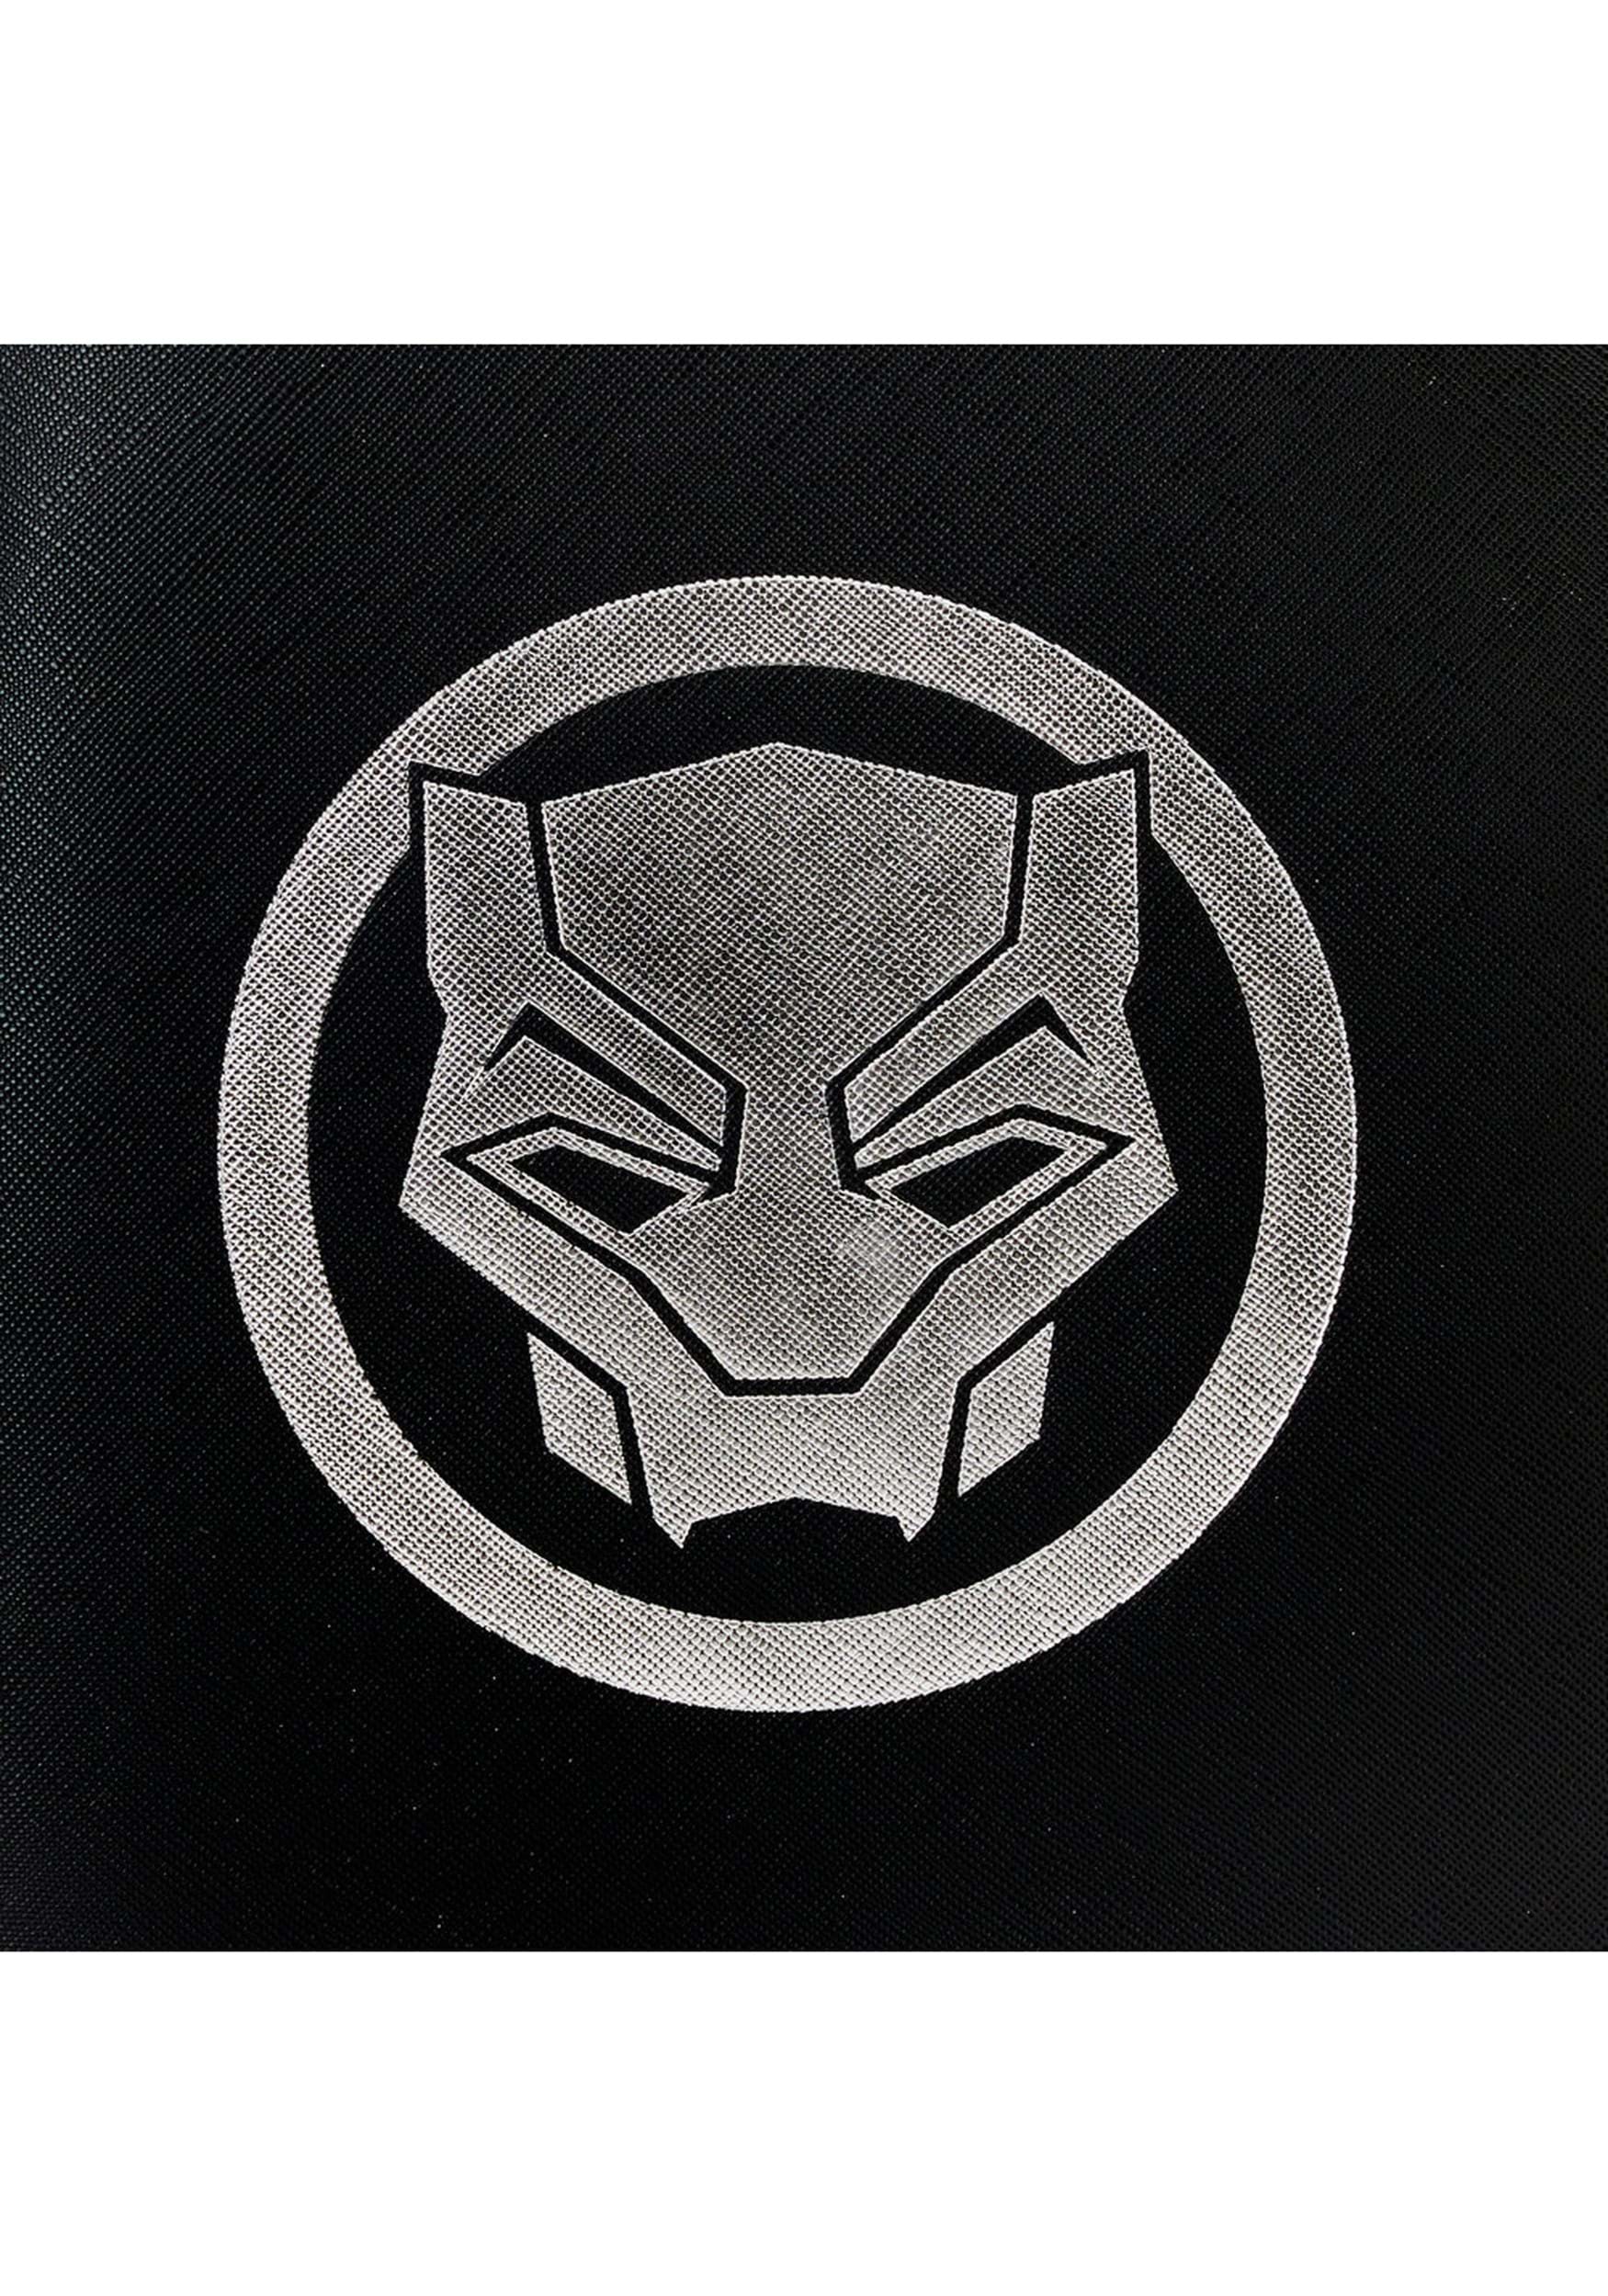 black panther marvel symbol